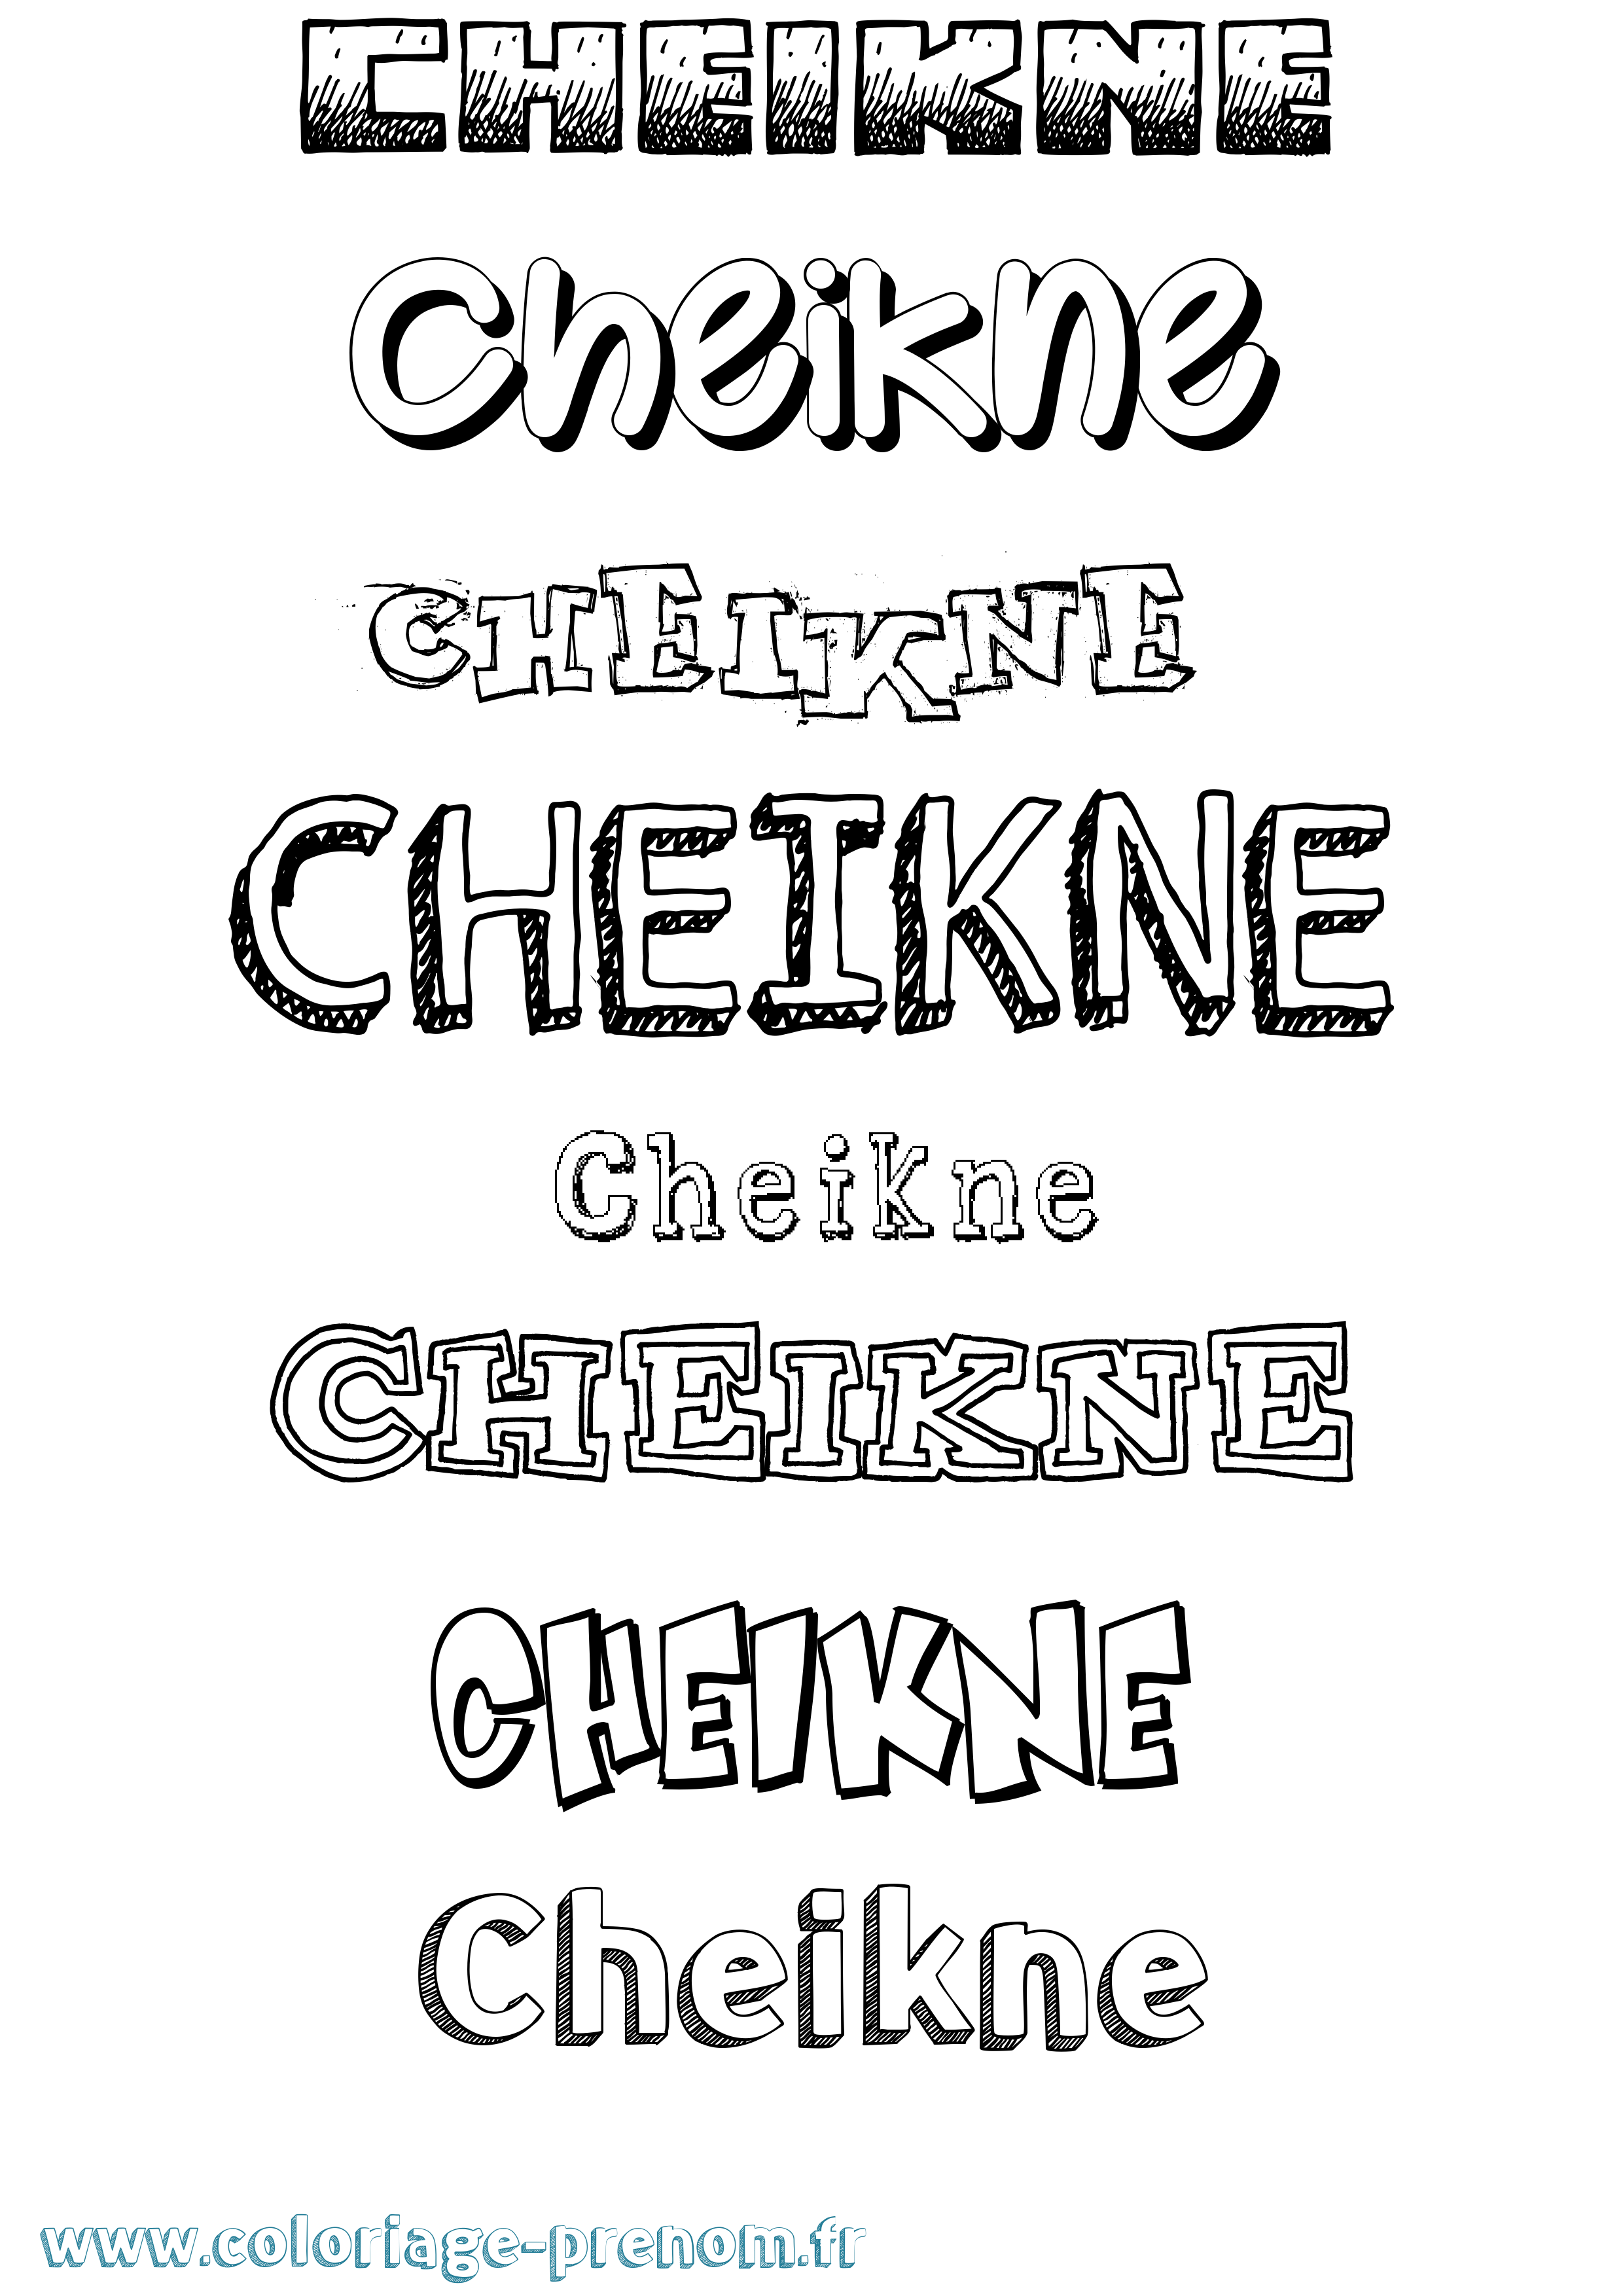 Coloriage prénom Cheikne Dessiné